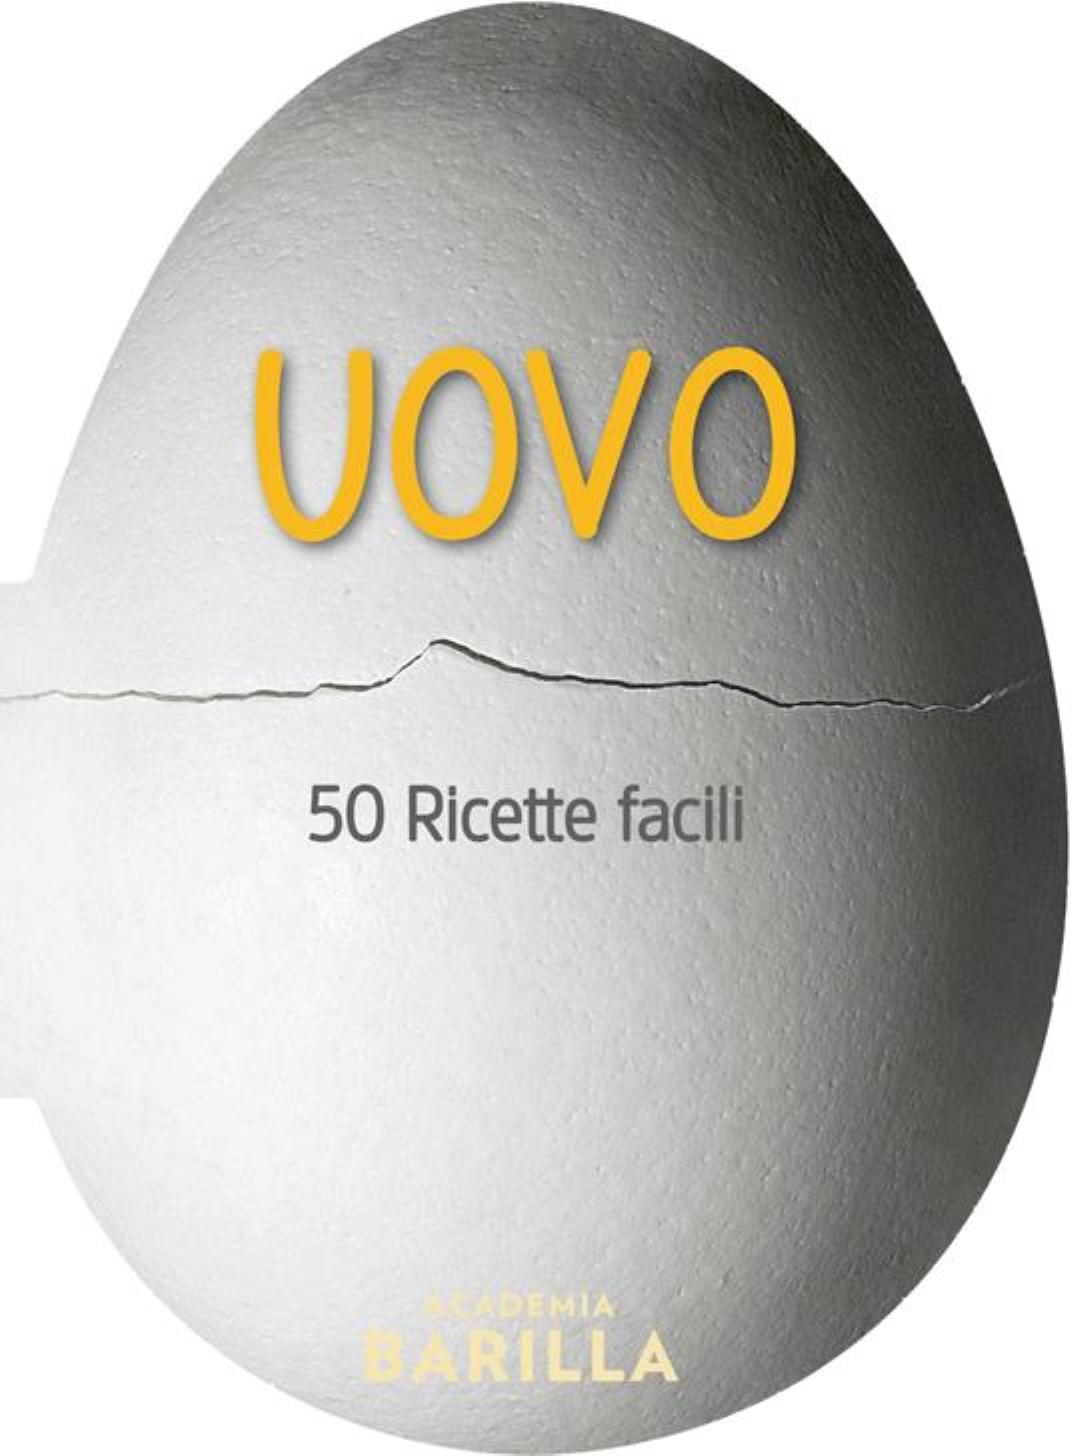 Recensione di UOVO 50 Ricette Facili – Academia Barilla